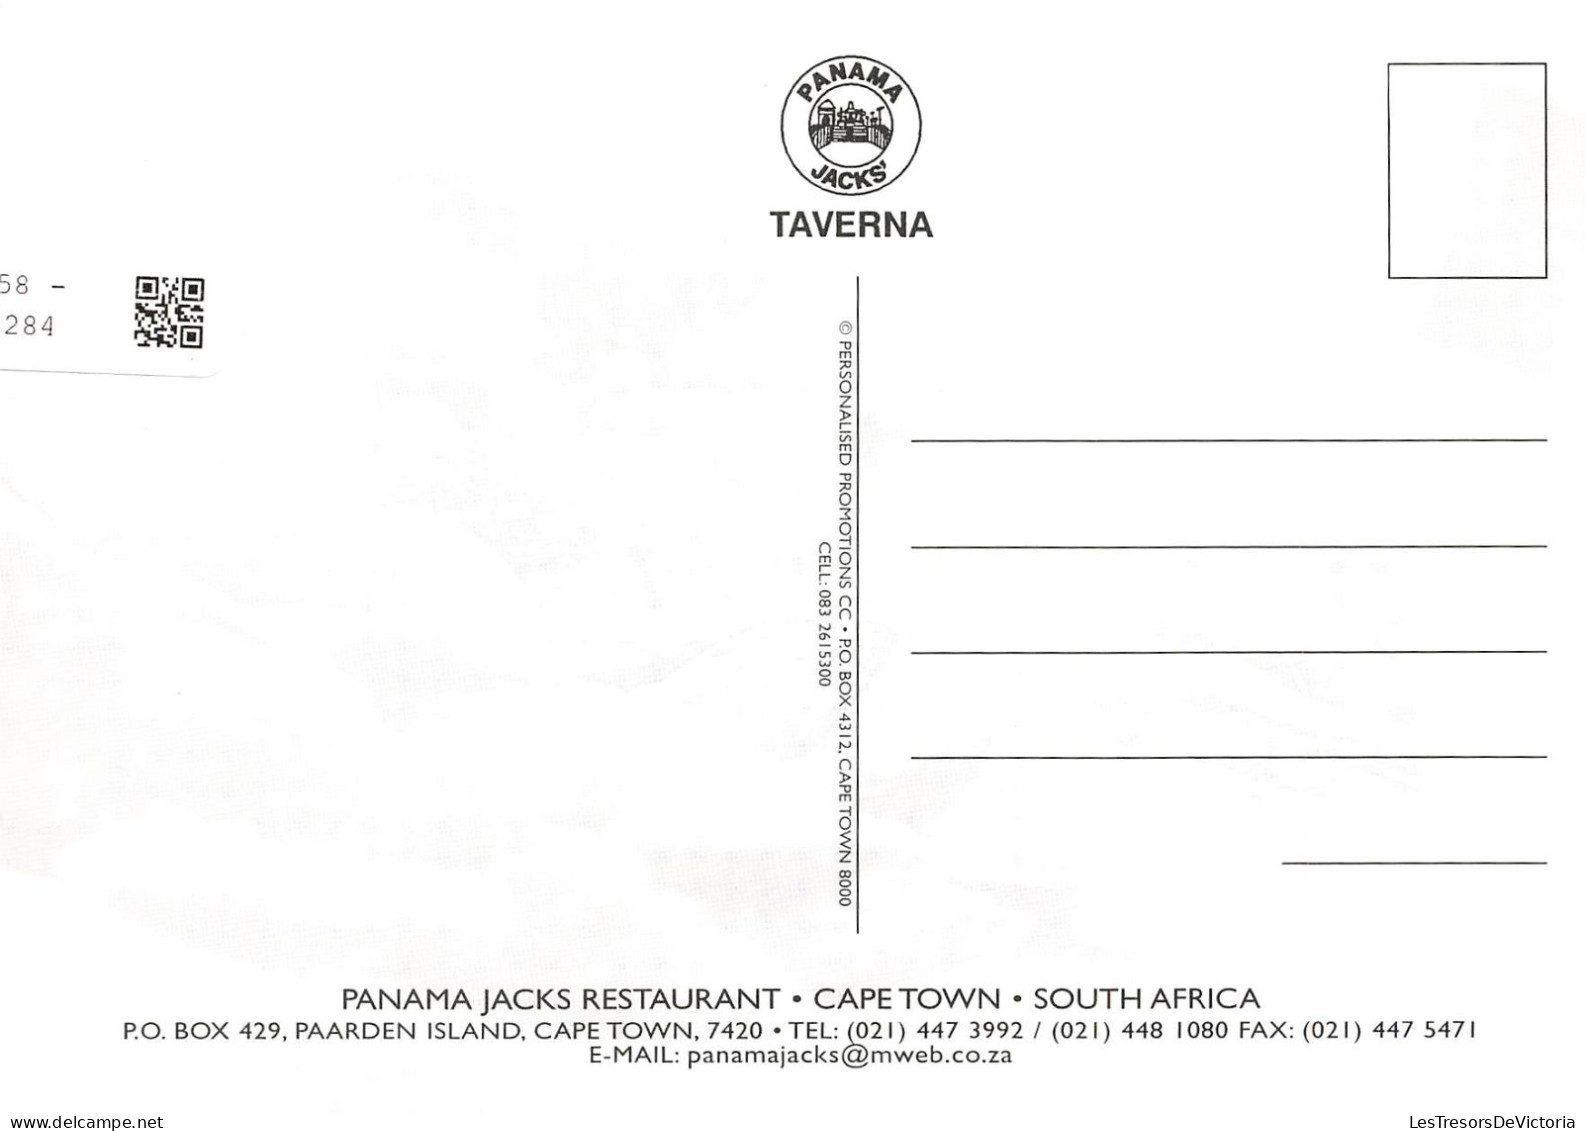 AFRIQUE DU SUD - Panama Jacks'Taverna Restaurant - Cape Town - South Africa - Multi-vues - Carte Postale - Afrique Du Sud